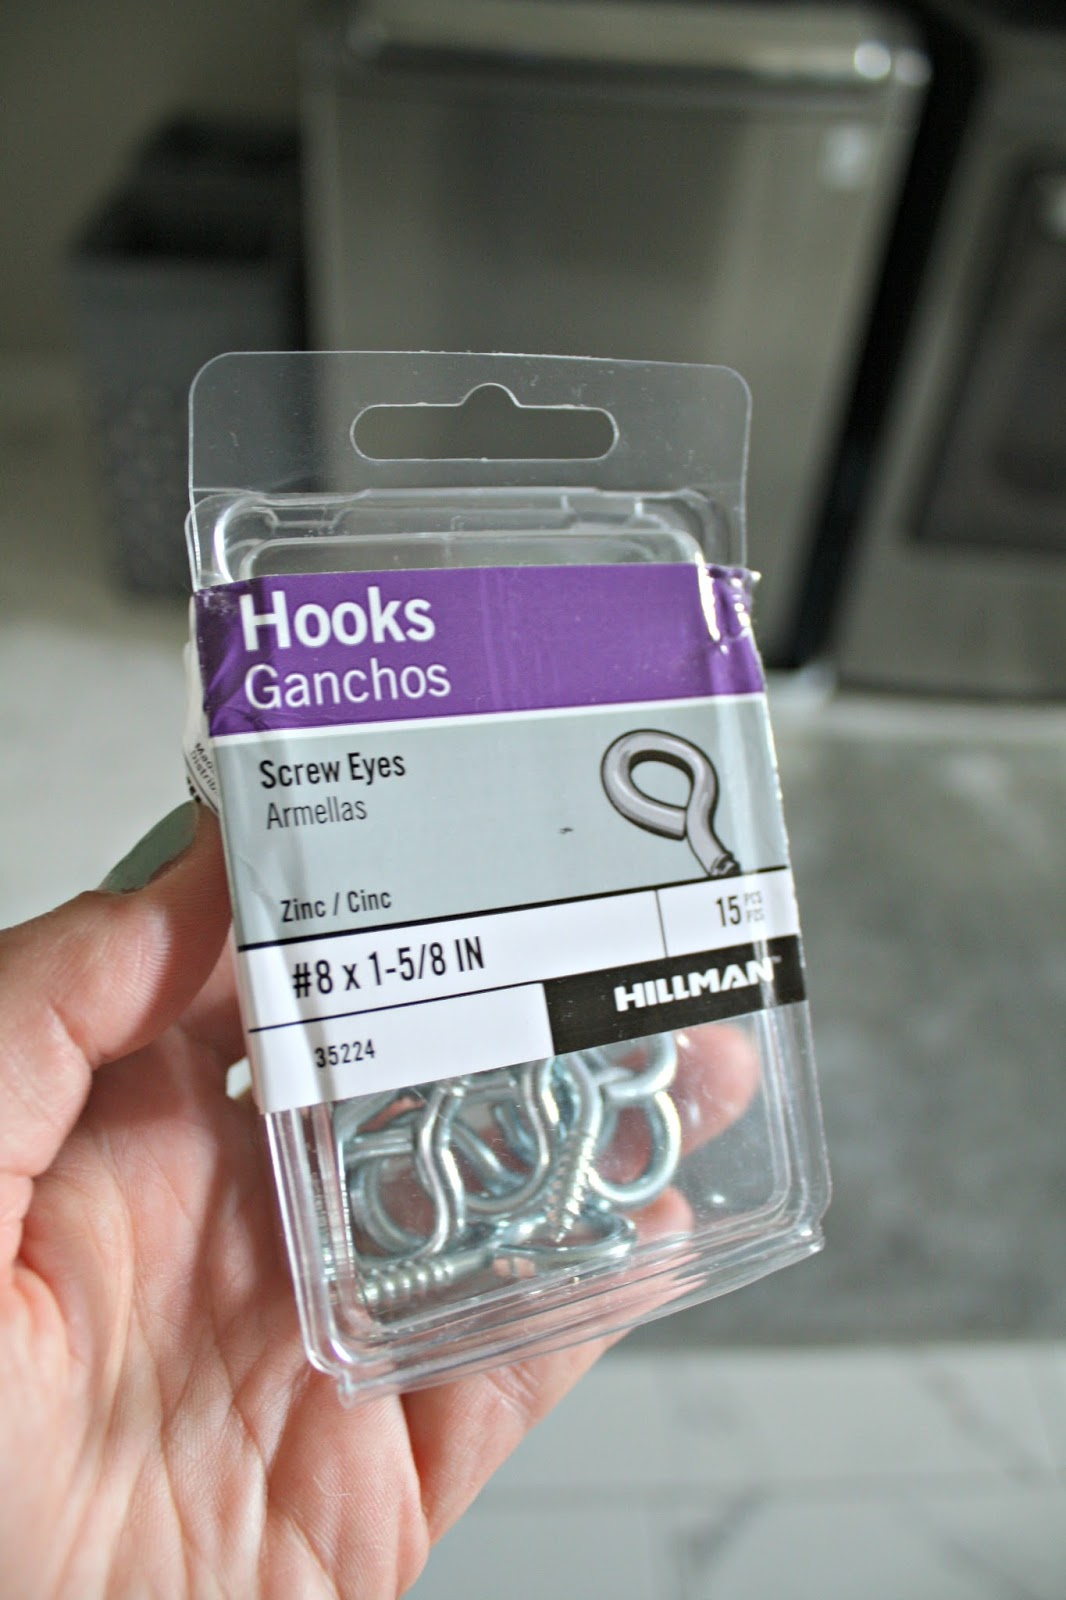 Eye hooks for hanging drapes